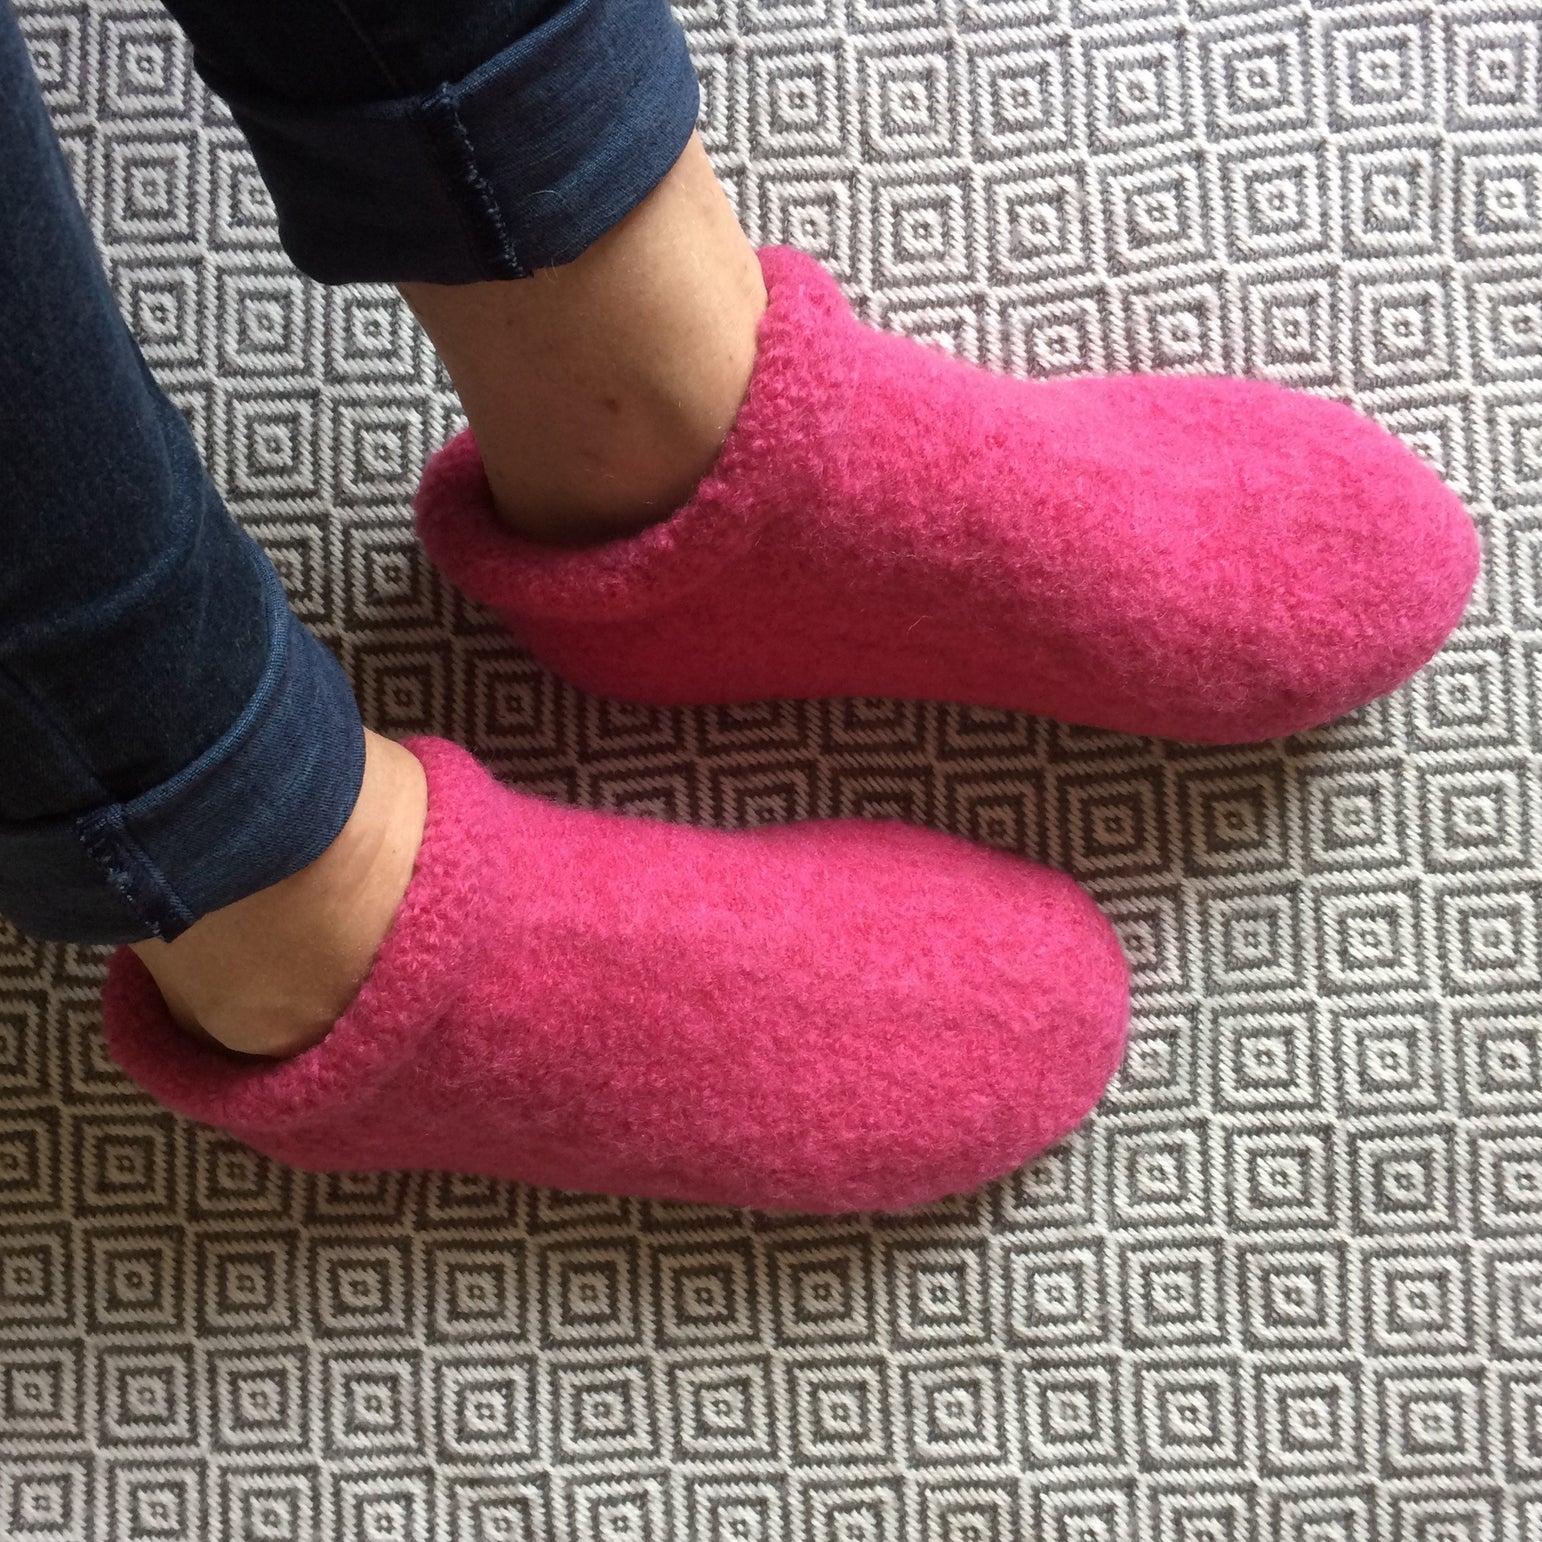 The Love Of Colour - Merino Wool Slipper Socks